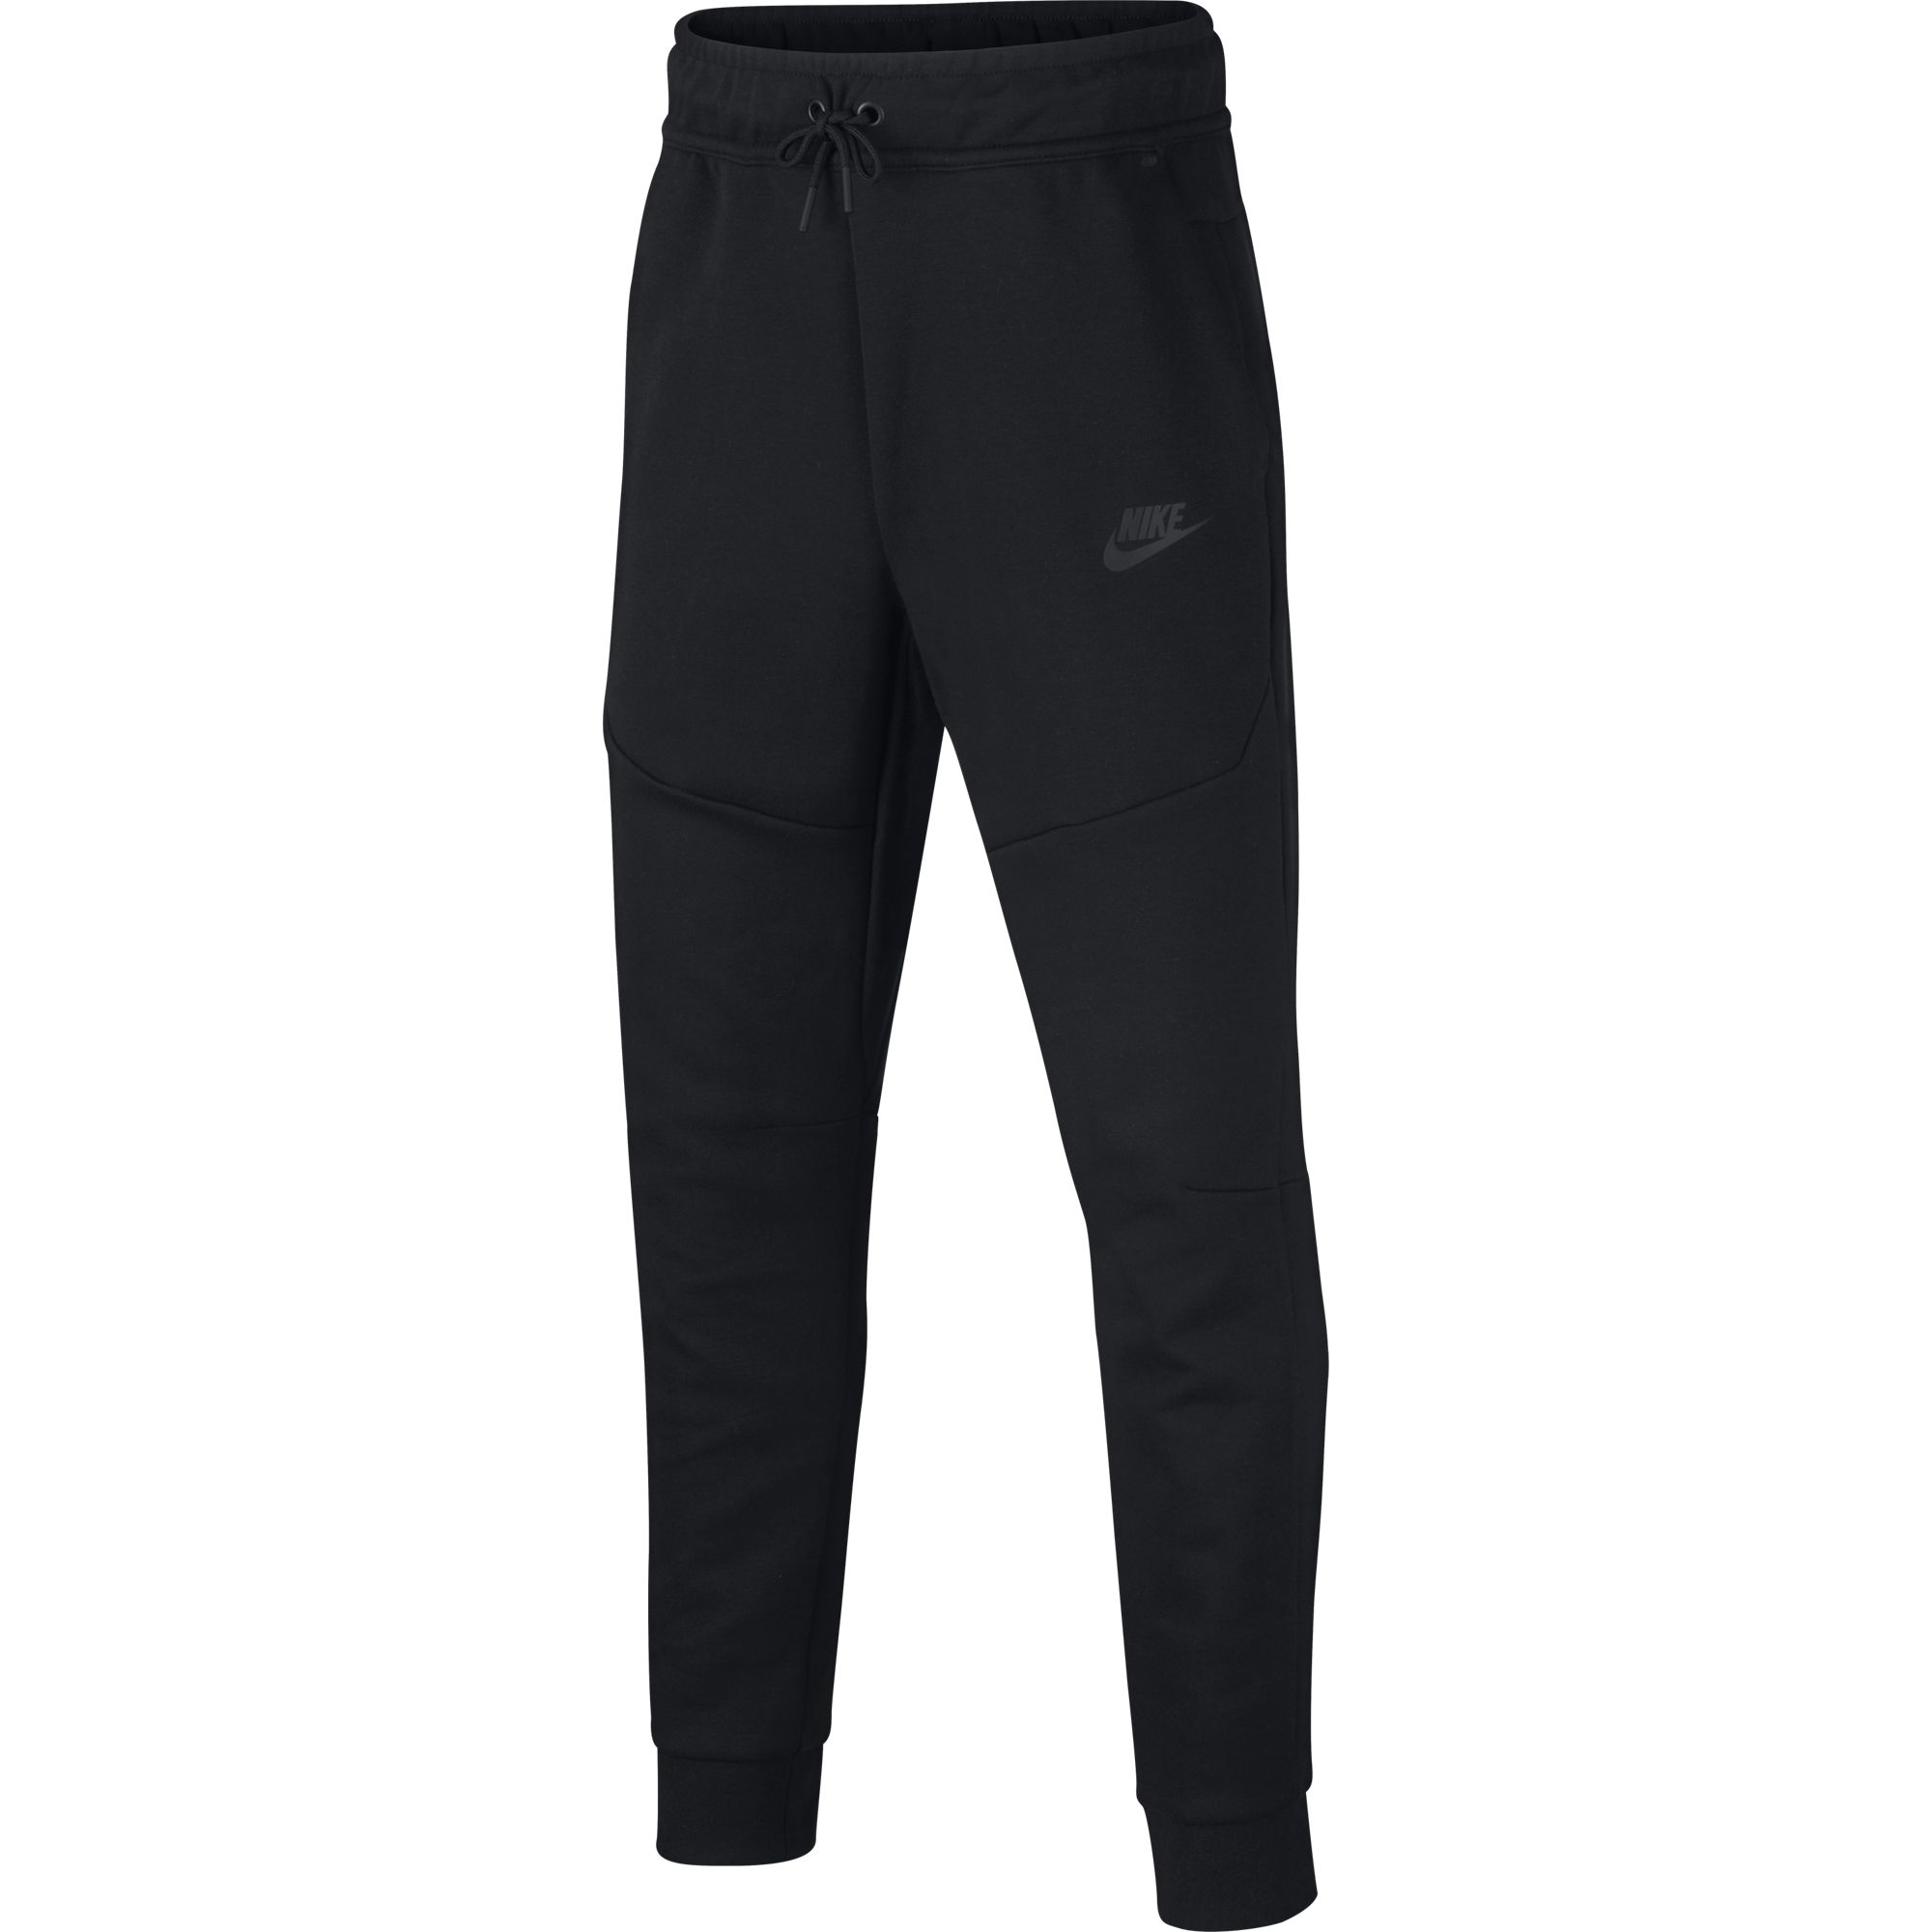 Подростковые брюки Nike Tech Fleece Pants CU9213-010 купить в Москве с доставкой: цена, фото, описание - интернет-магазин Street-beat.ru